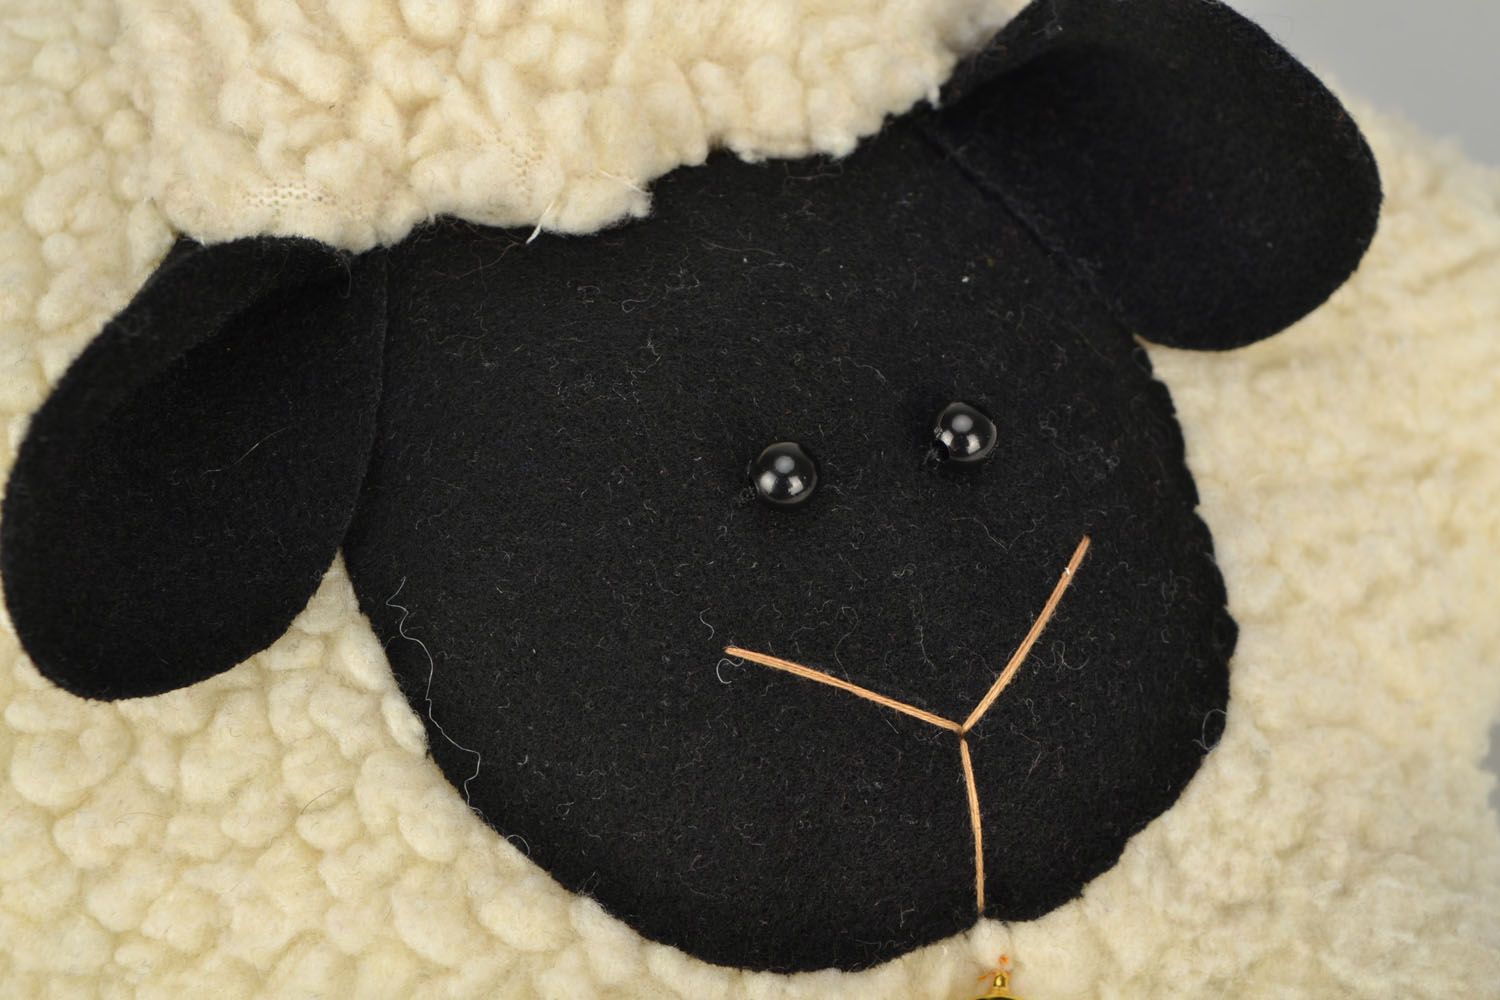 Juguete de peluche con forma de ovejita, almohada foto 4